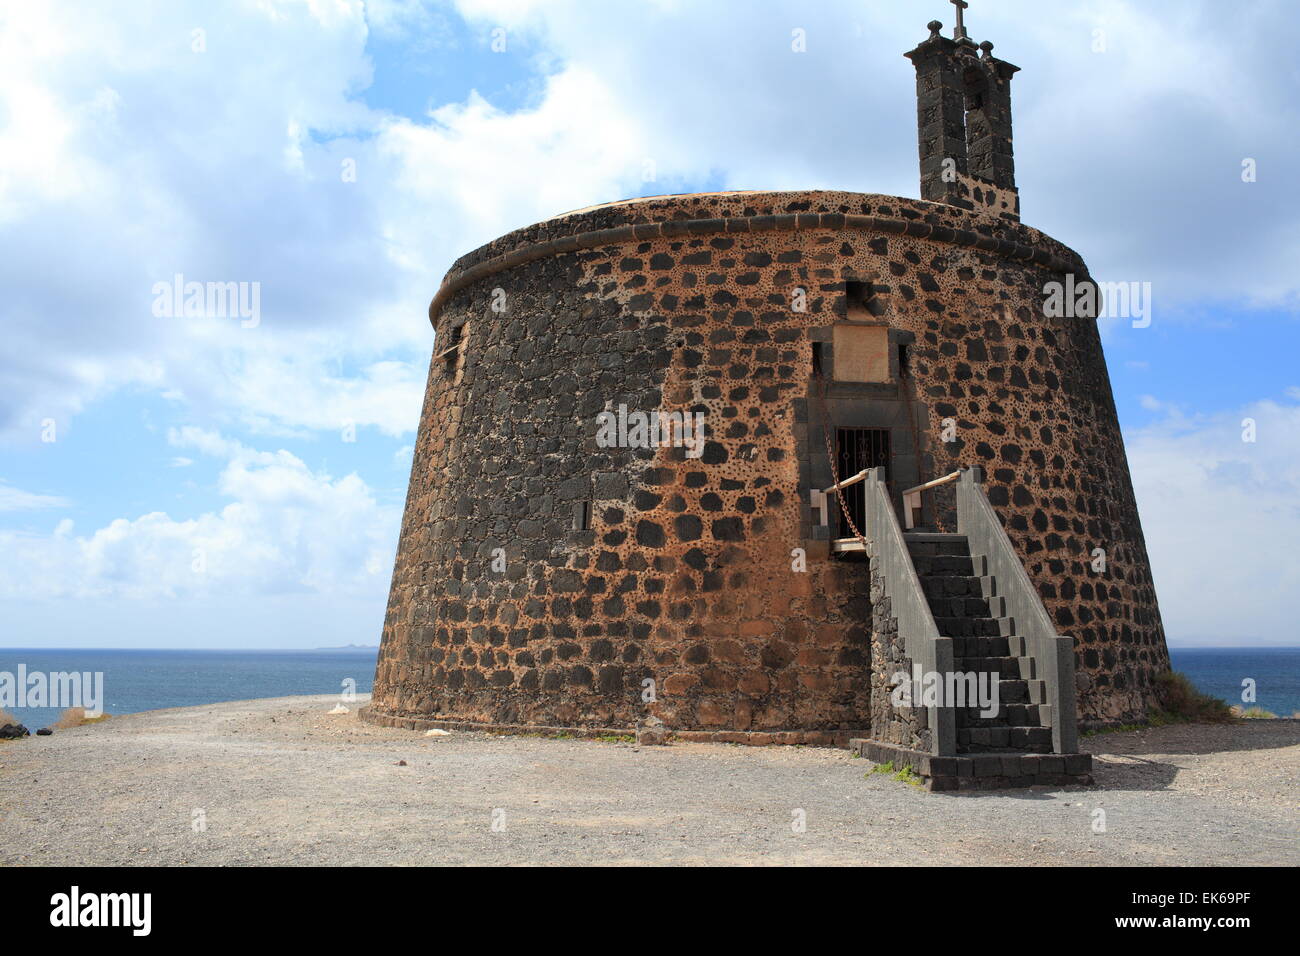 Castillo de las Coloradas, Playa Blanca, Lanzarote, Canary Islands, Europe Stock Photo